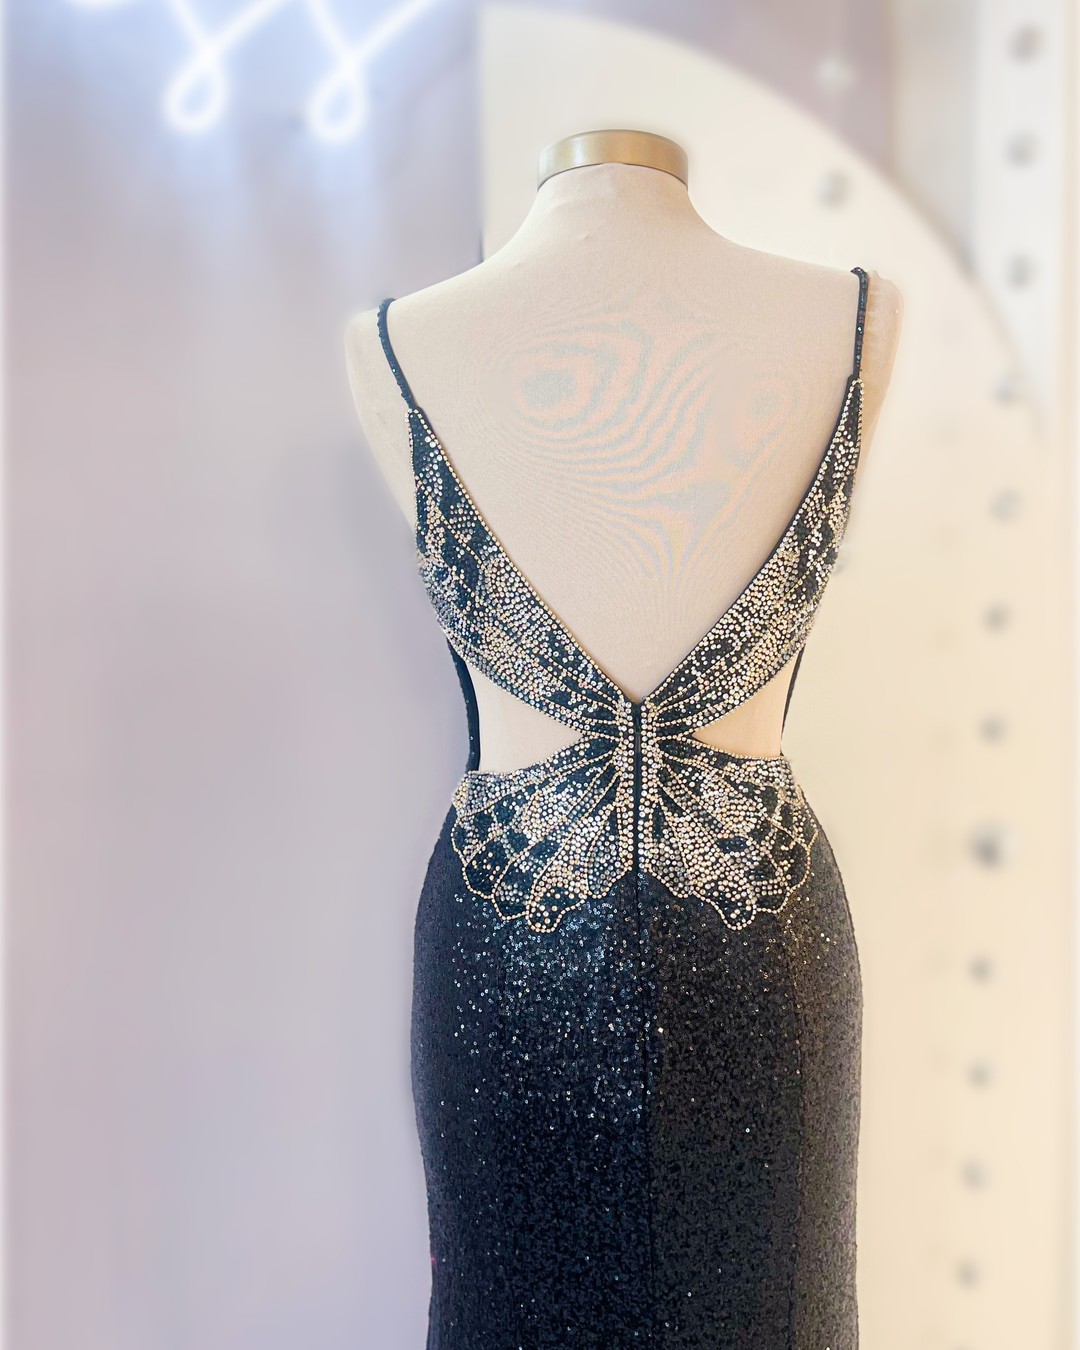 Sekinowa sukienka na studniówkę 2023 SLIT STRIT STRITED Crystals Butterfly zima formalna wieczór przyjęcia weselny suknia.